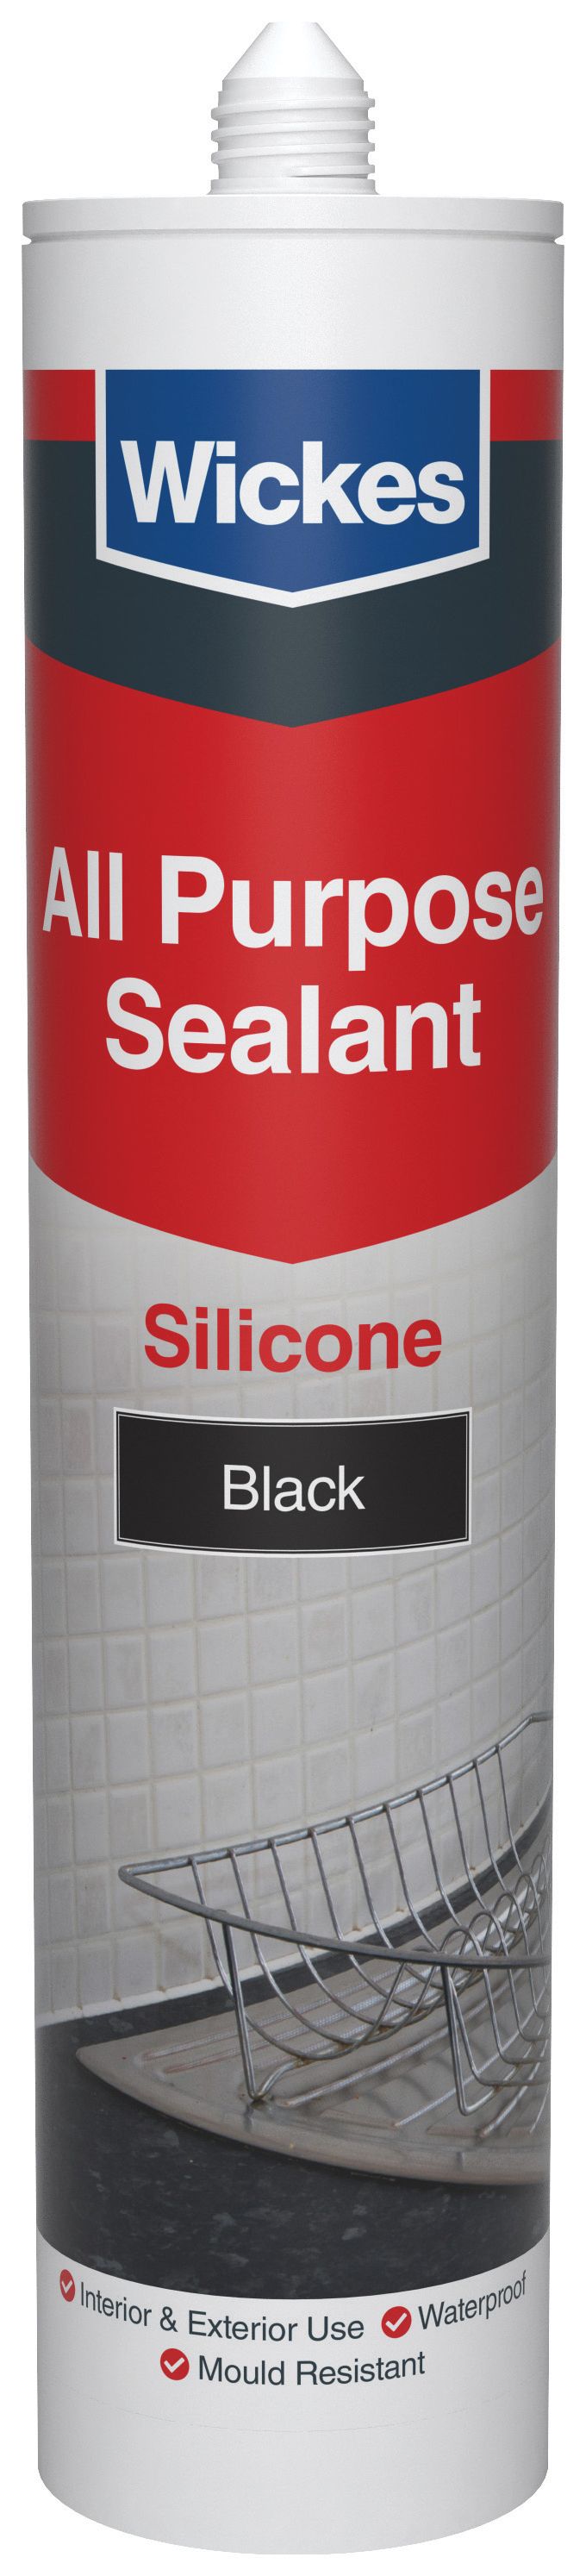 Image of Wickes All Purpose Silicone Sealant Black 300ml